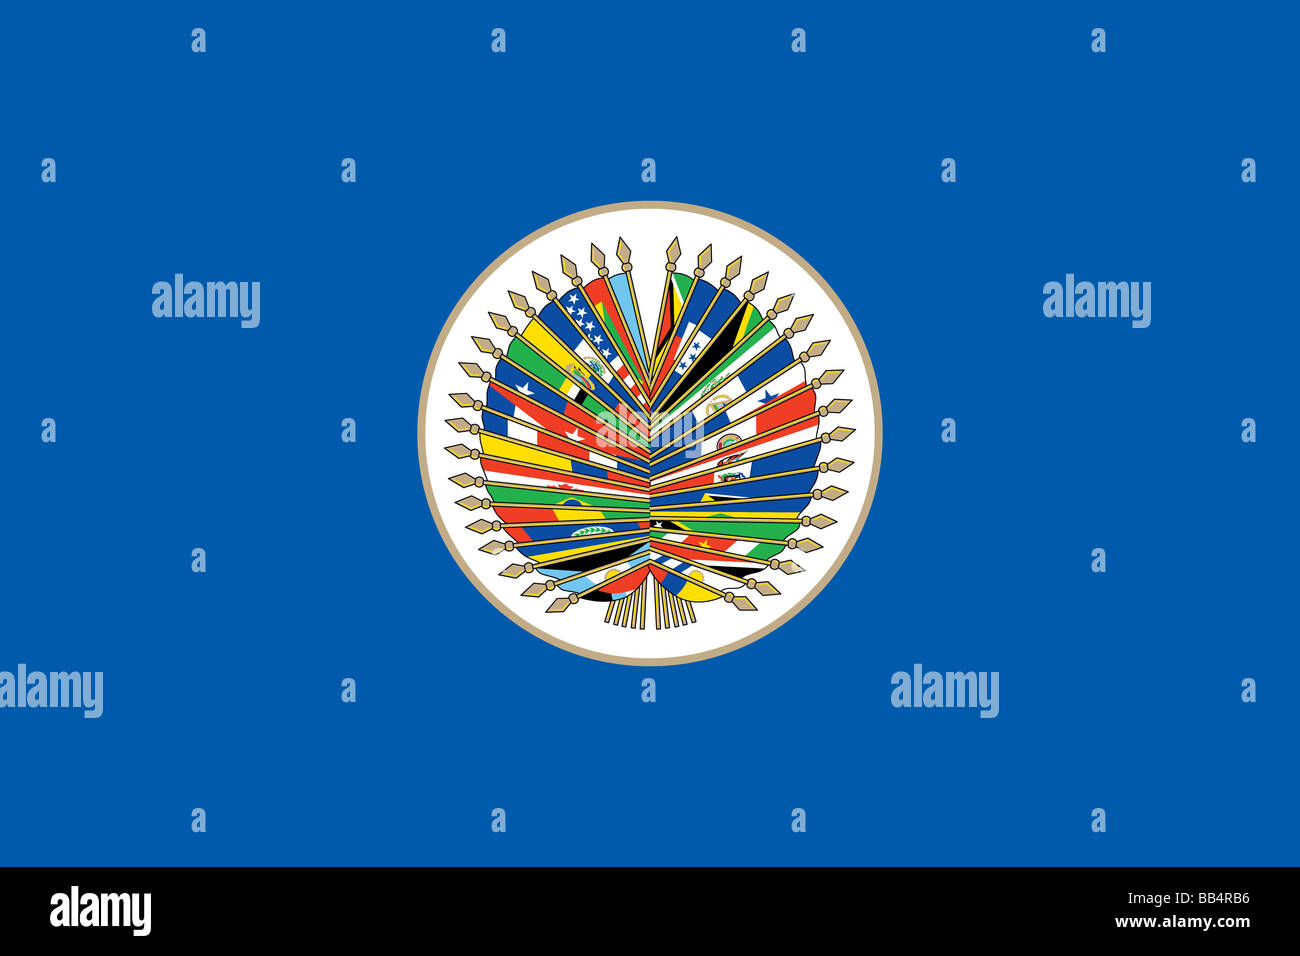 Flagge von der Organisation der amerikanischen Staaten, eine internationale Organisation, bestehend aus den unabhängigen Staaten von Amerika. Stockfoto